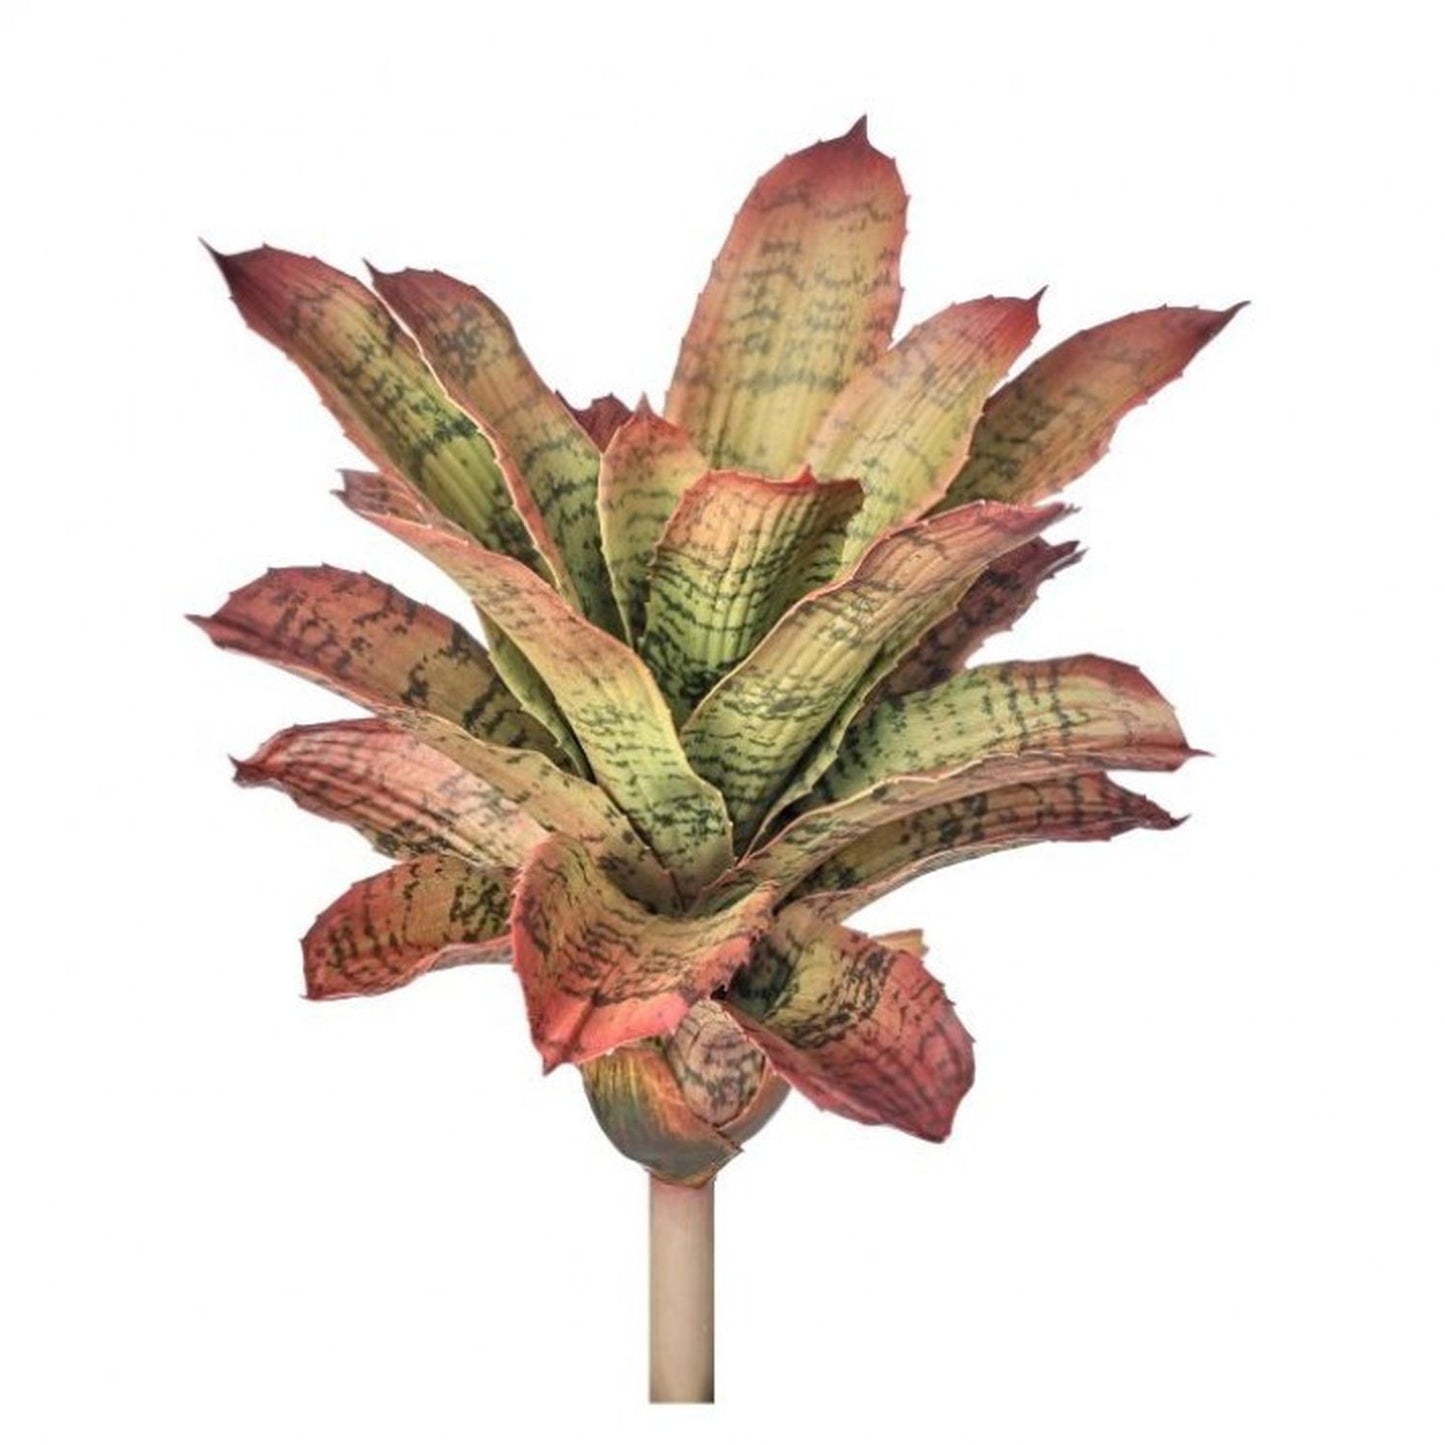 Regency International Plastic Pineapple Bromeliad Plant 13"